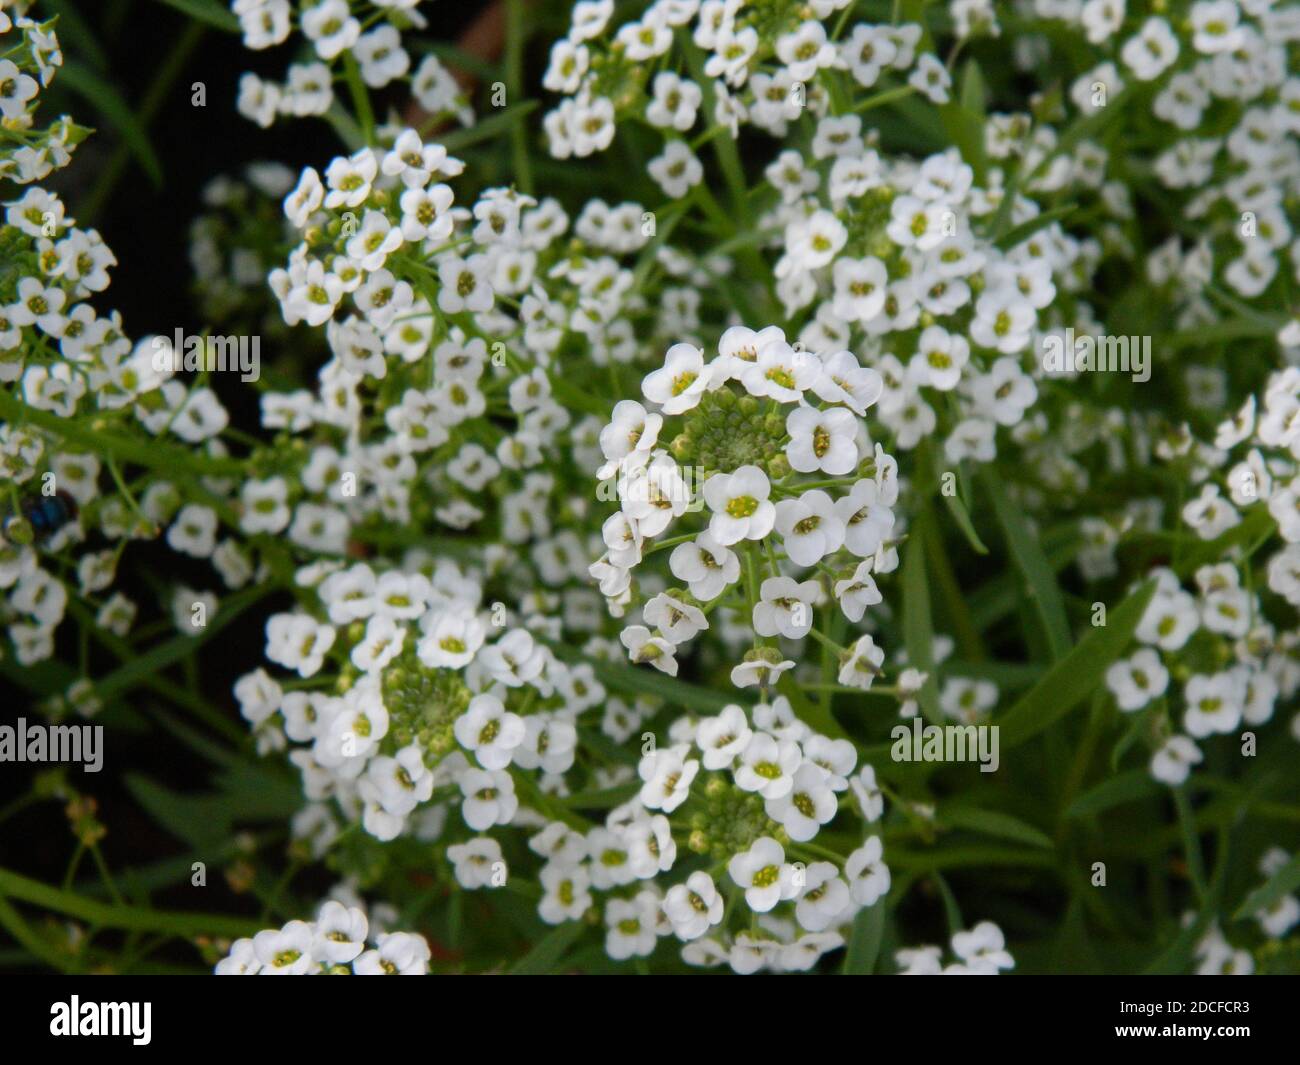 Alyssum Flowers. Stock Photo